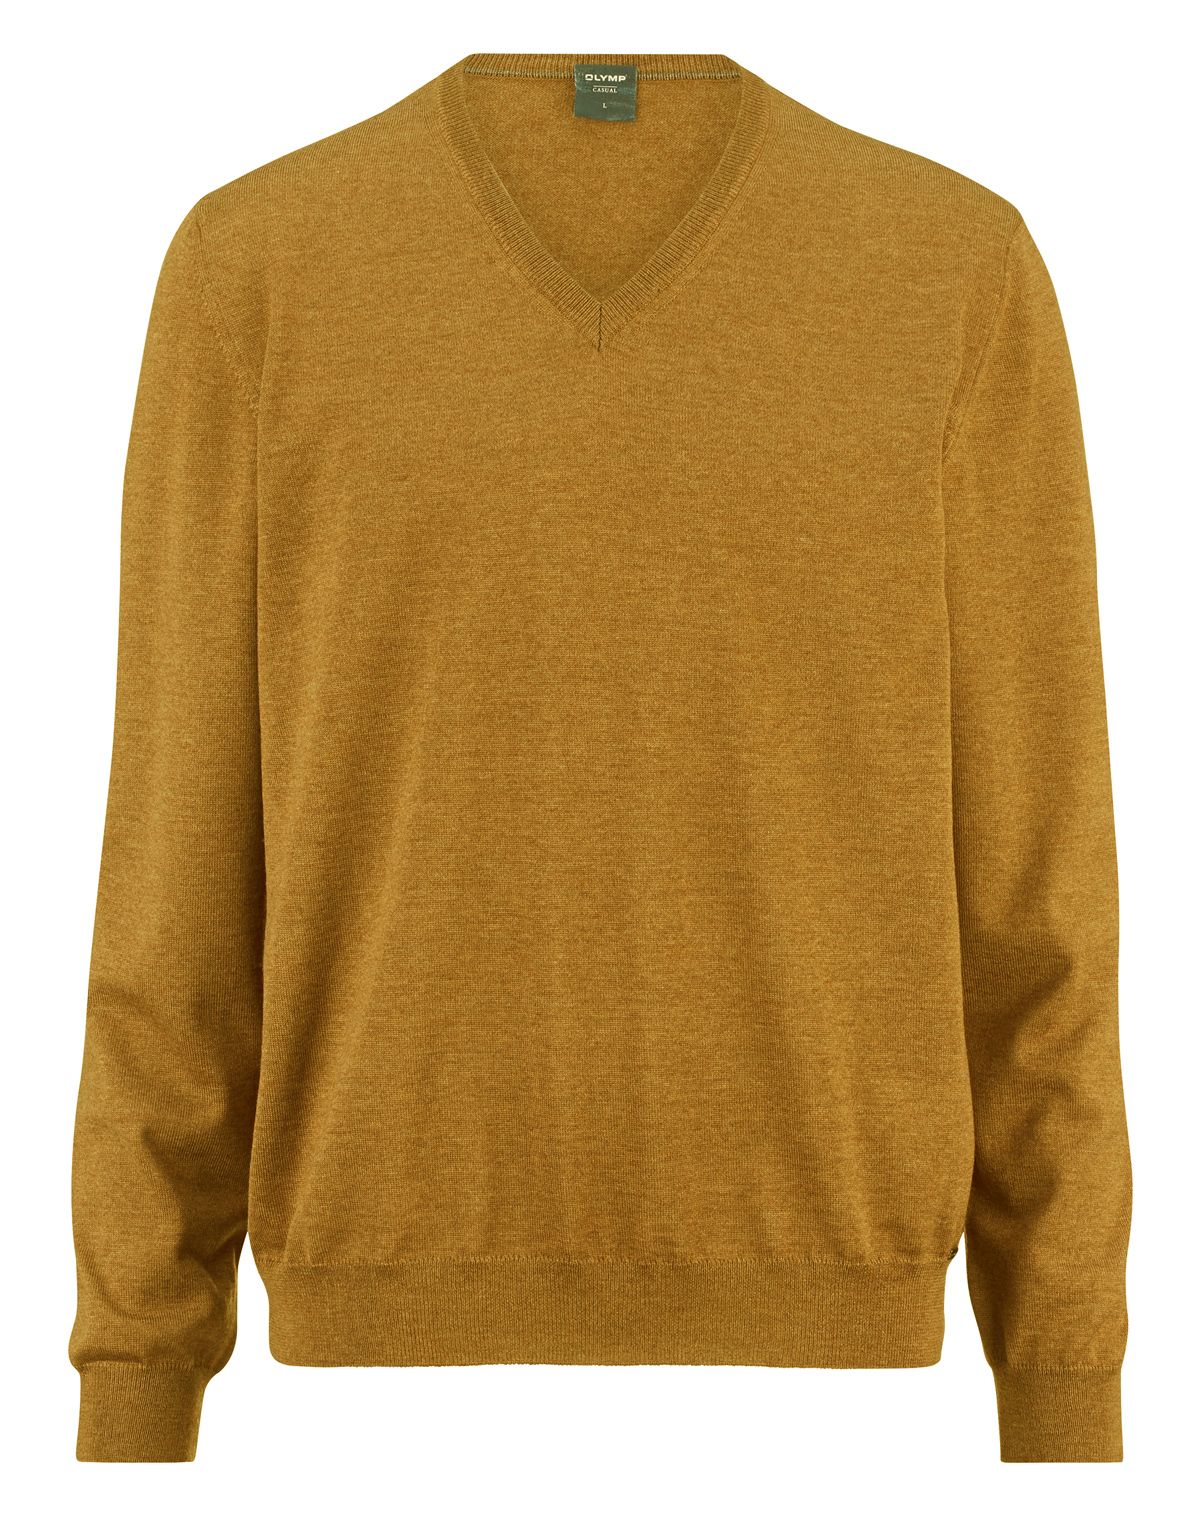 Пуловер жёлтый мужской OLYMP, modern fit | купить в интернет-магазине Olymp-Men